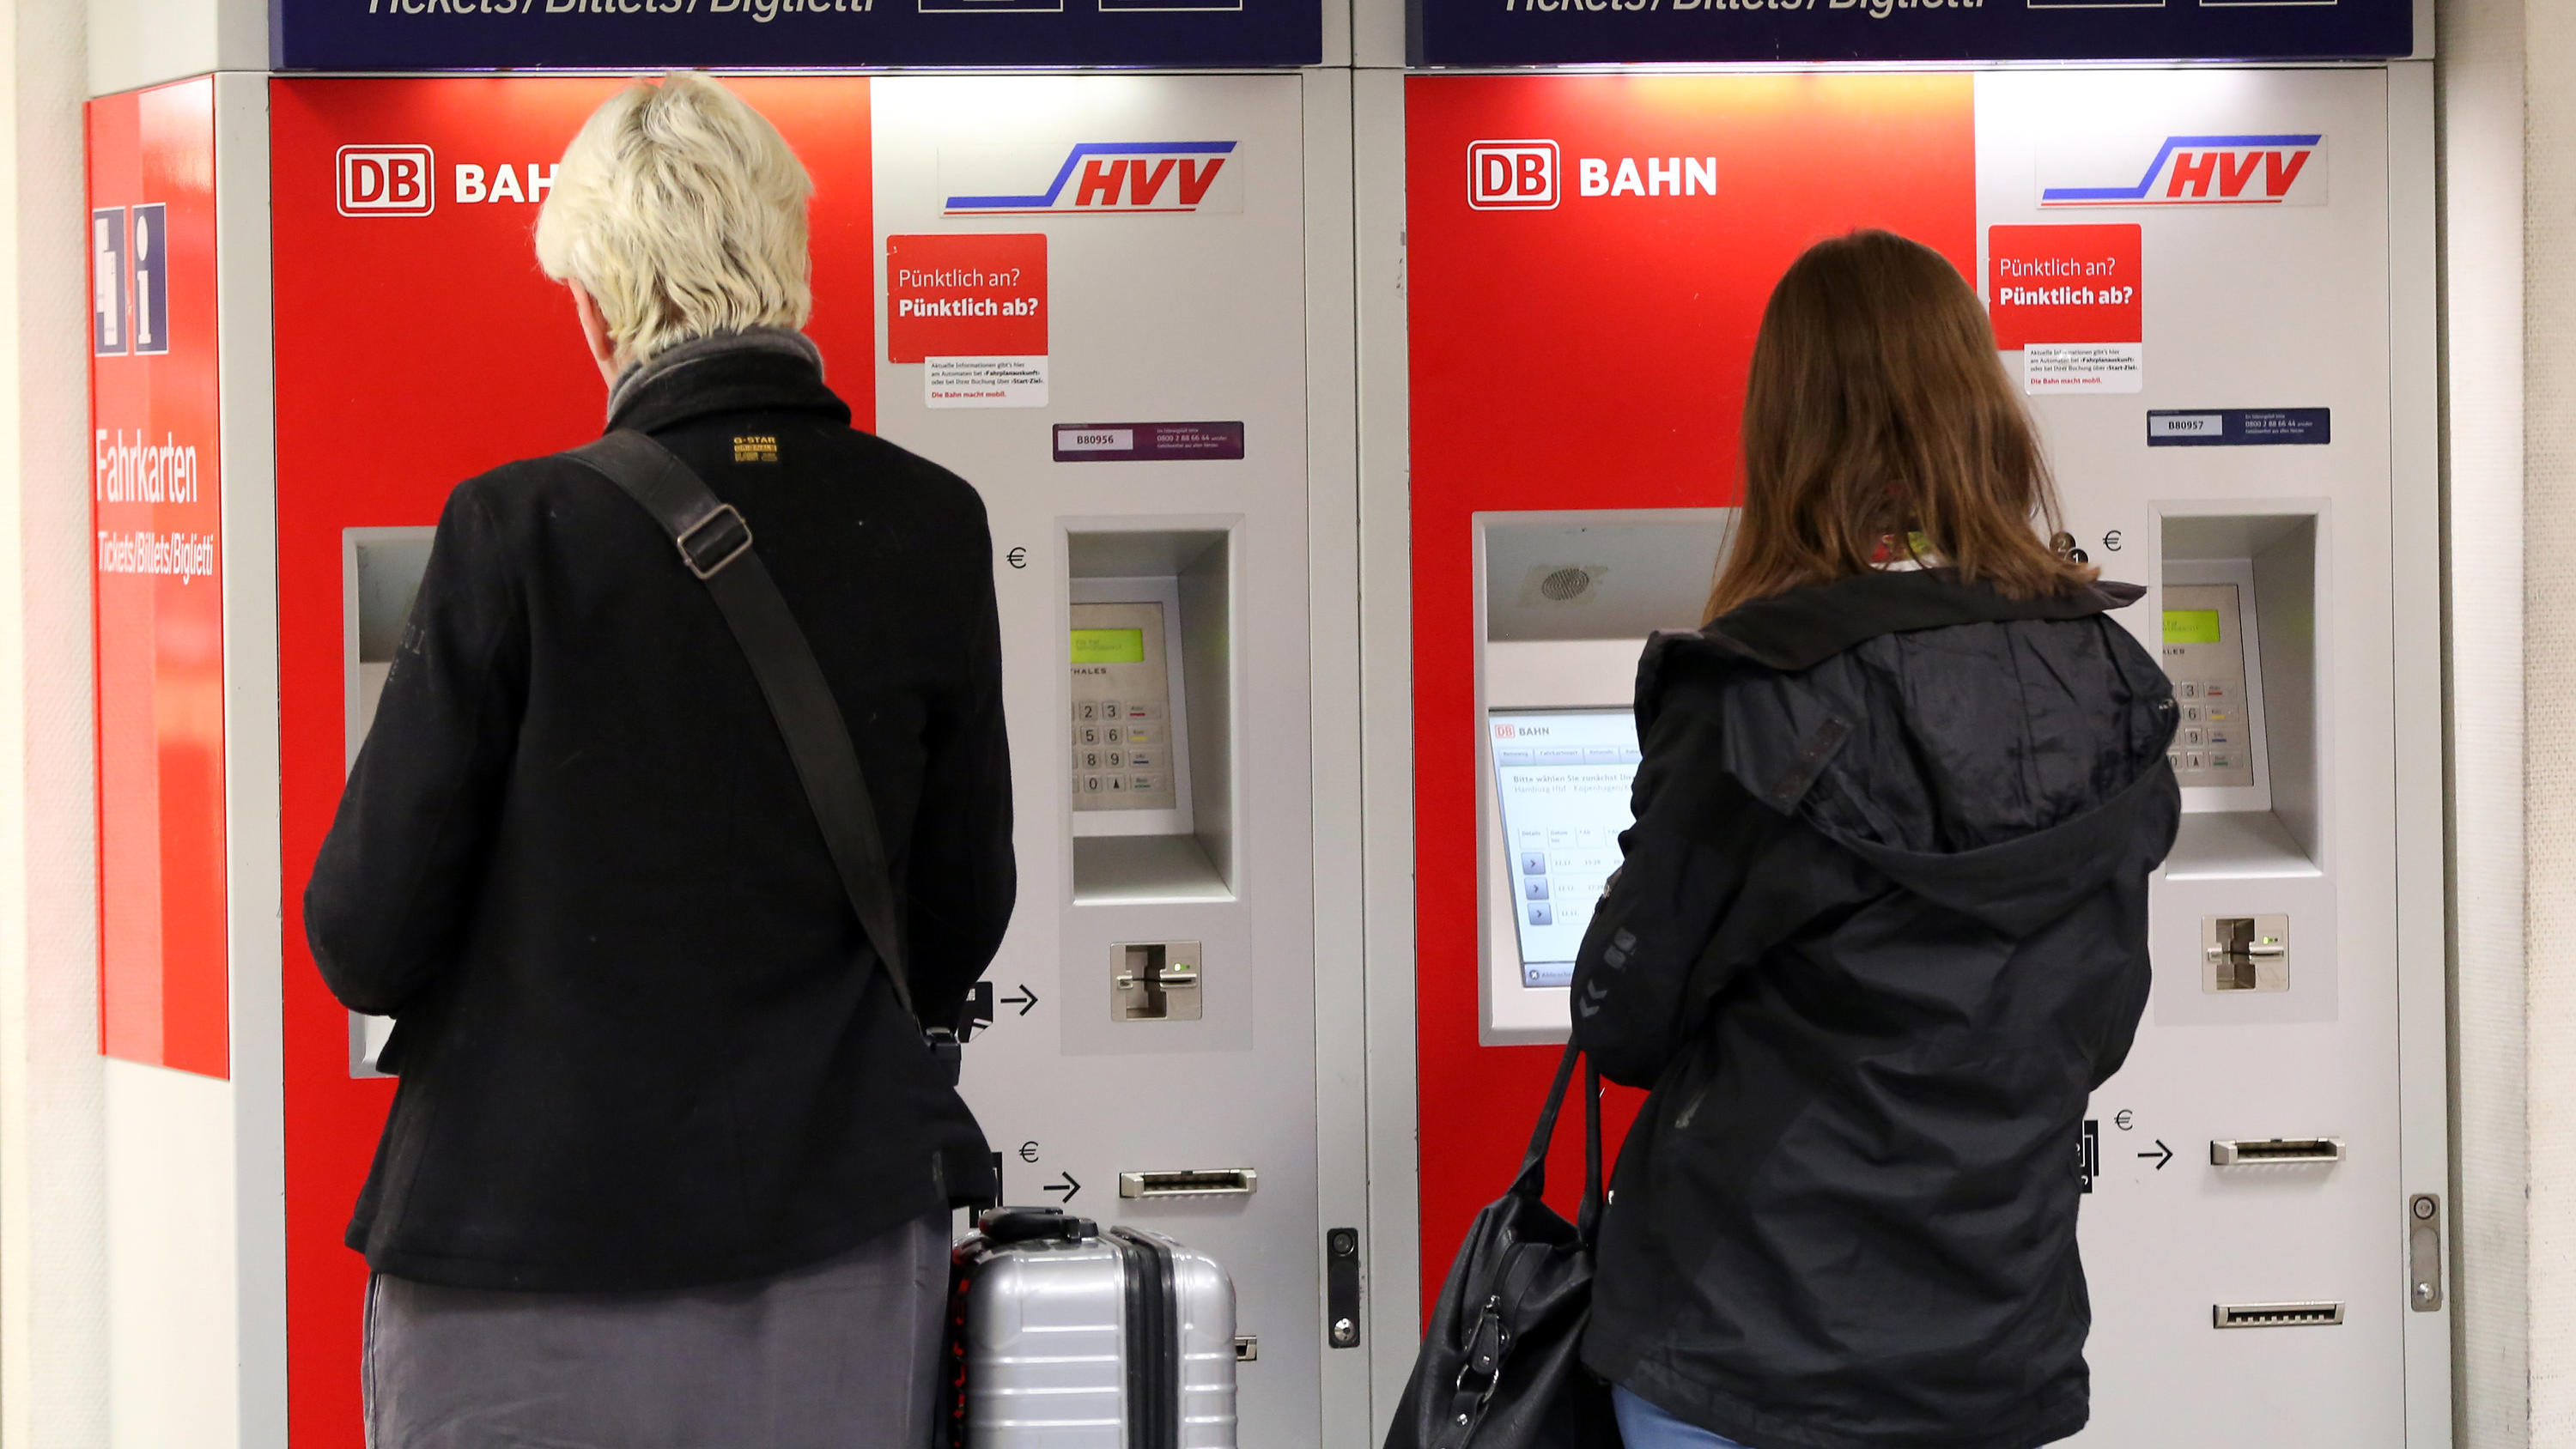 ARCHIV - Reisende kaufen am 15.10.2014 an Fahrkartenautomaten im Hauptbahnhof in Hamburg Fahrkarten. (zu dpa "Bahn erhöht Fahrpreise im Fernverkehr um 0,9 Prozent" vom 16.10.2017) Foto: Bodo Marks/dpa +++(c) dpa - Bildfunk+++